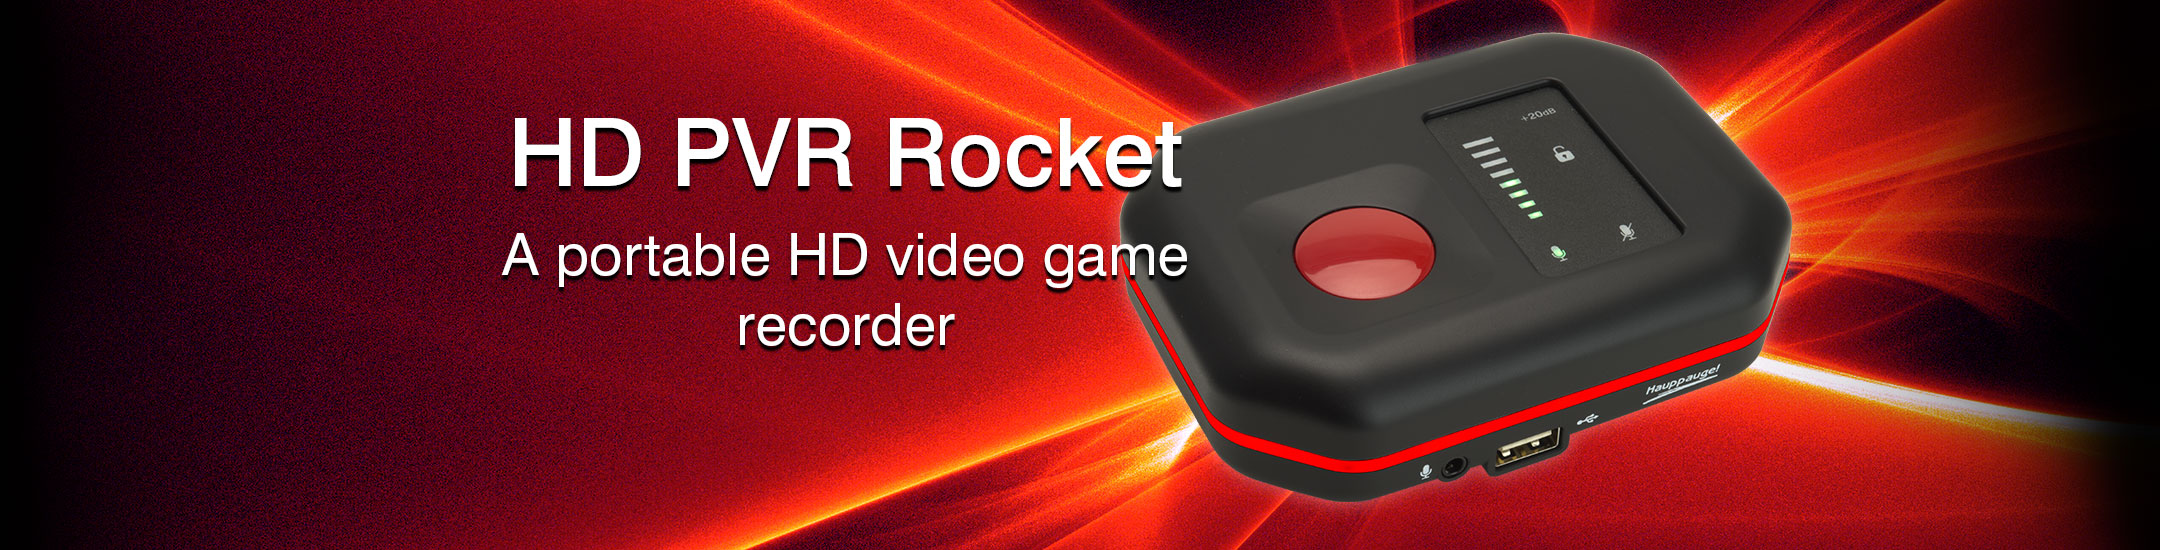 Hauppauge: HD PVR Rocket Product Description